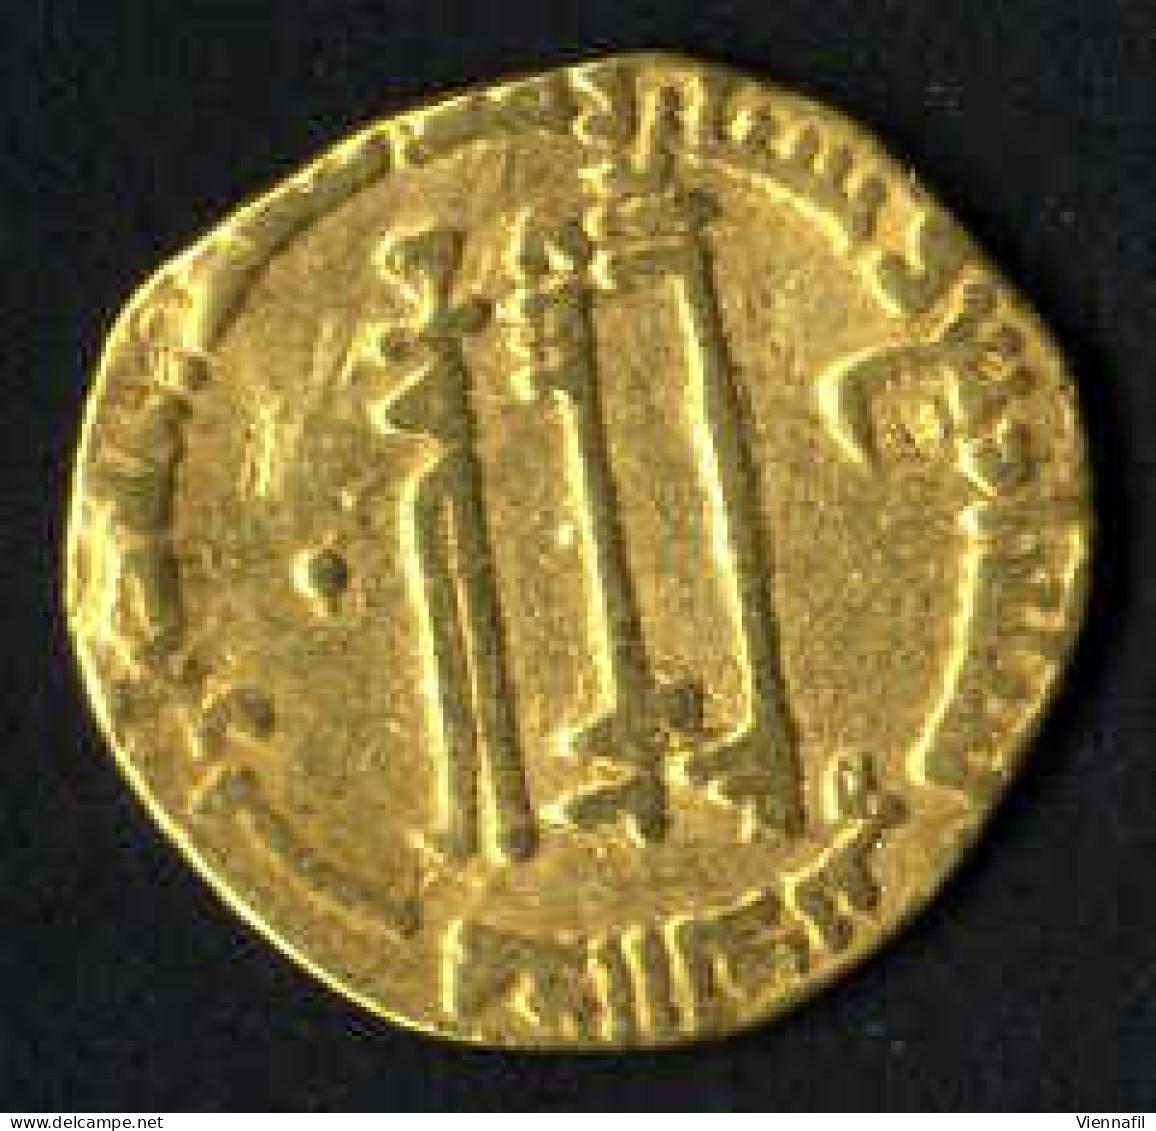 Al-Mahdi 158-169AH 775-785, Dinar Gold, 164 Ohne Münzstätte, BMC 85a, Sehr Schön - Islamische Münzen